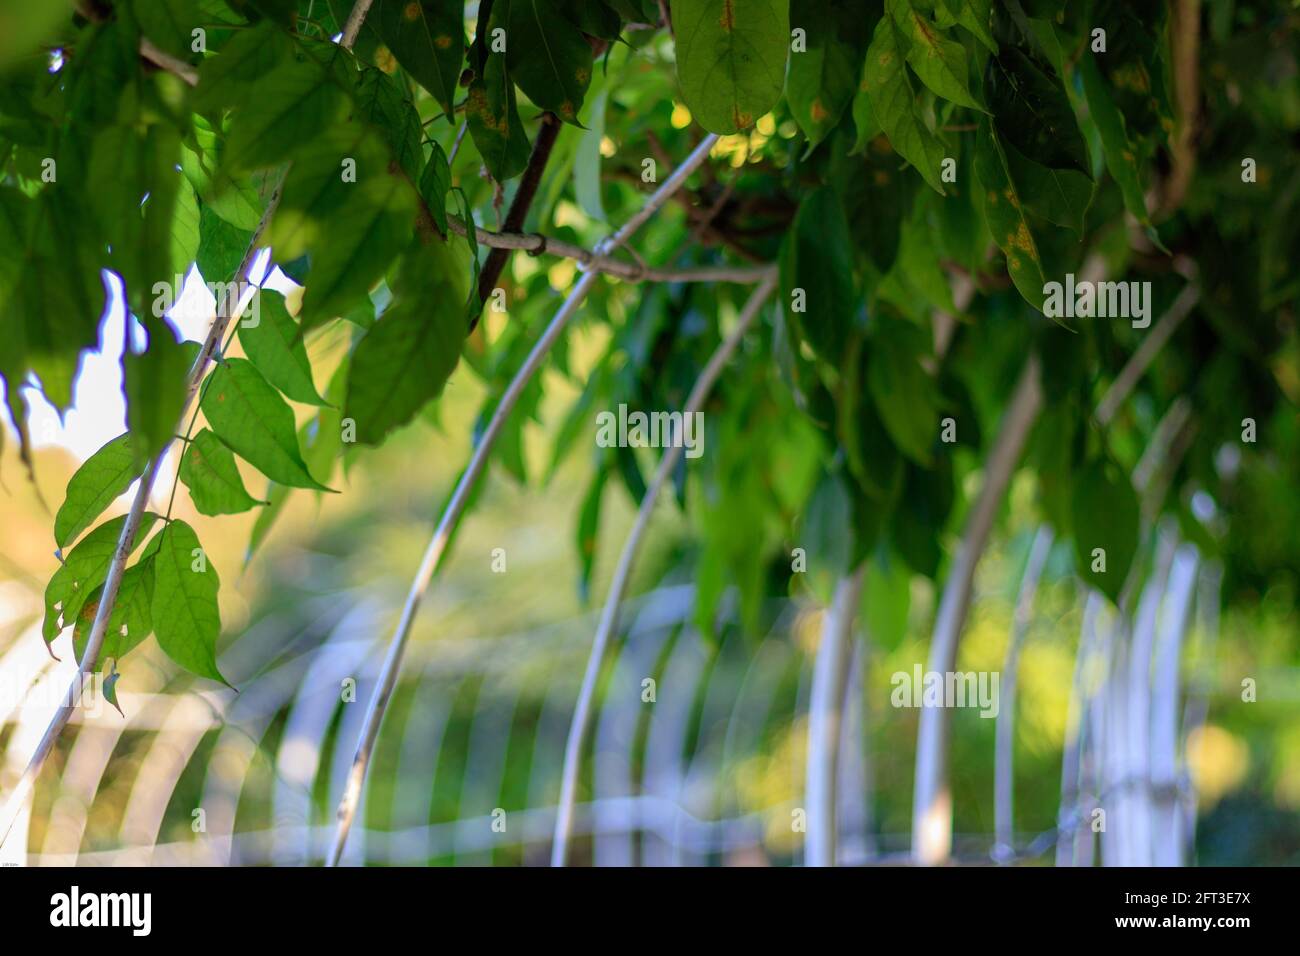 primo piano delle foglie verdi che si trovano in luce solare, messa a fuoco selettiva e vista con angolo basso Foto Stock